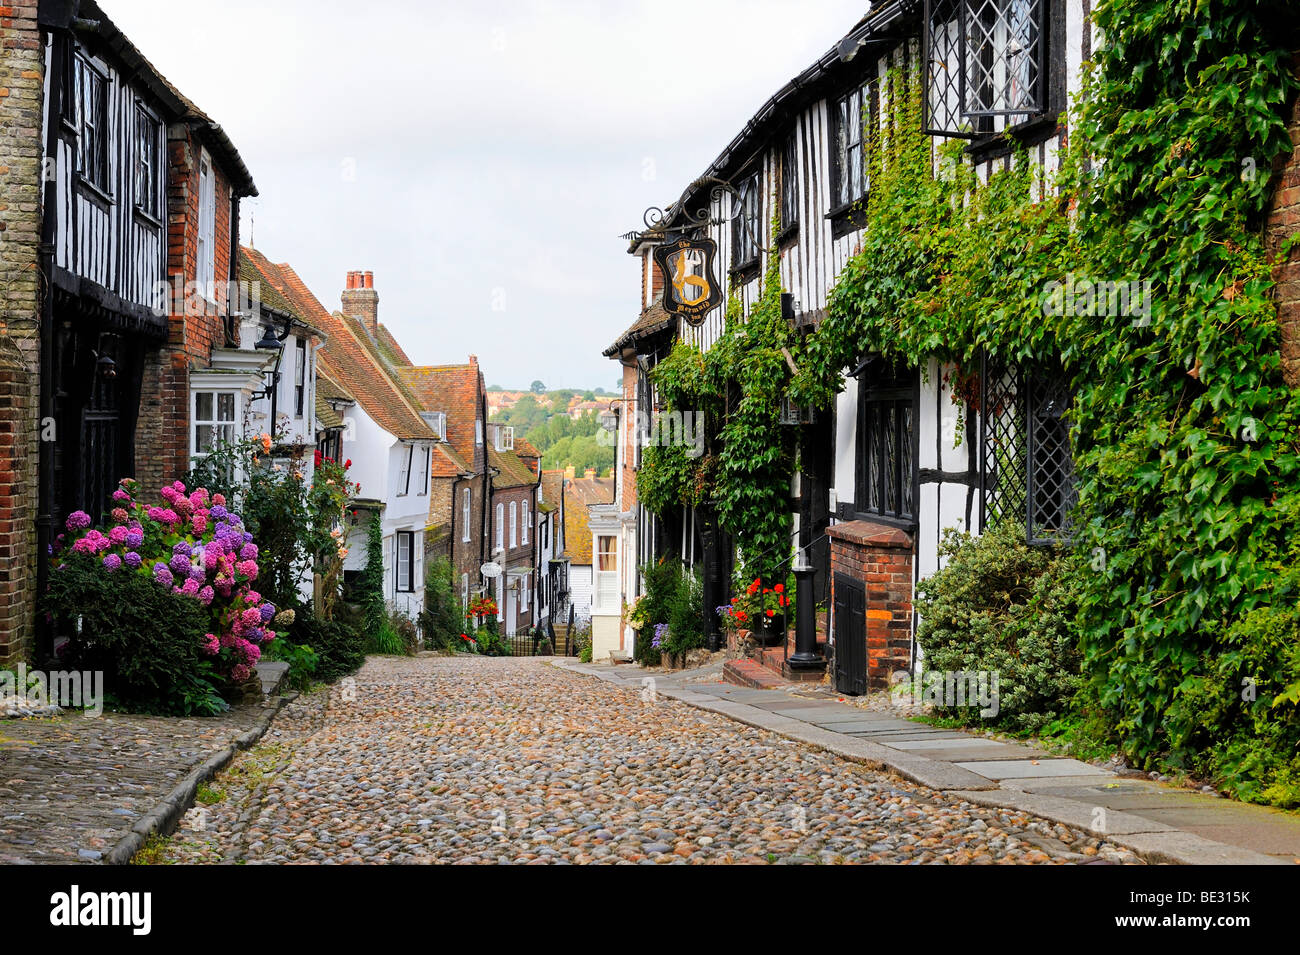 La célèbre rue sirène dans la vieille ville de Rye, East Sussex, Angleterre, Royaume-Uni, Europe Banque D'Images